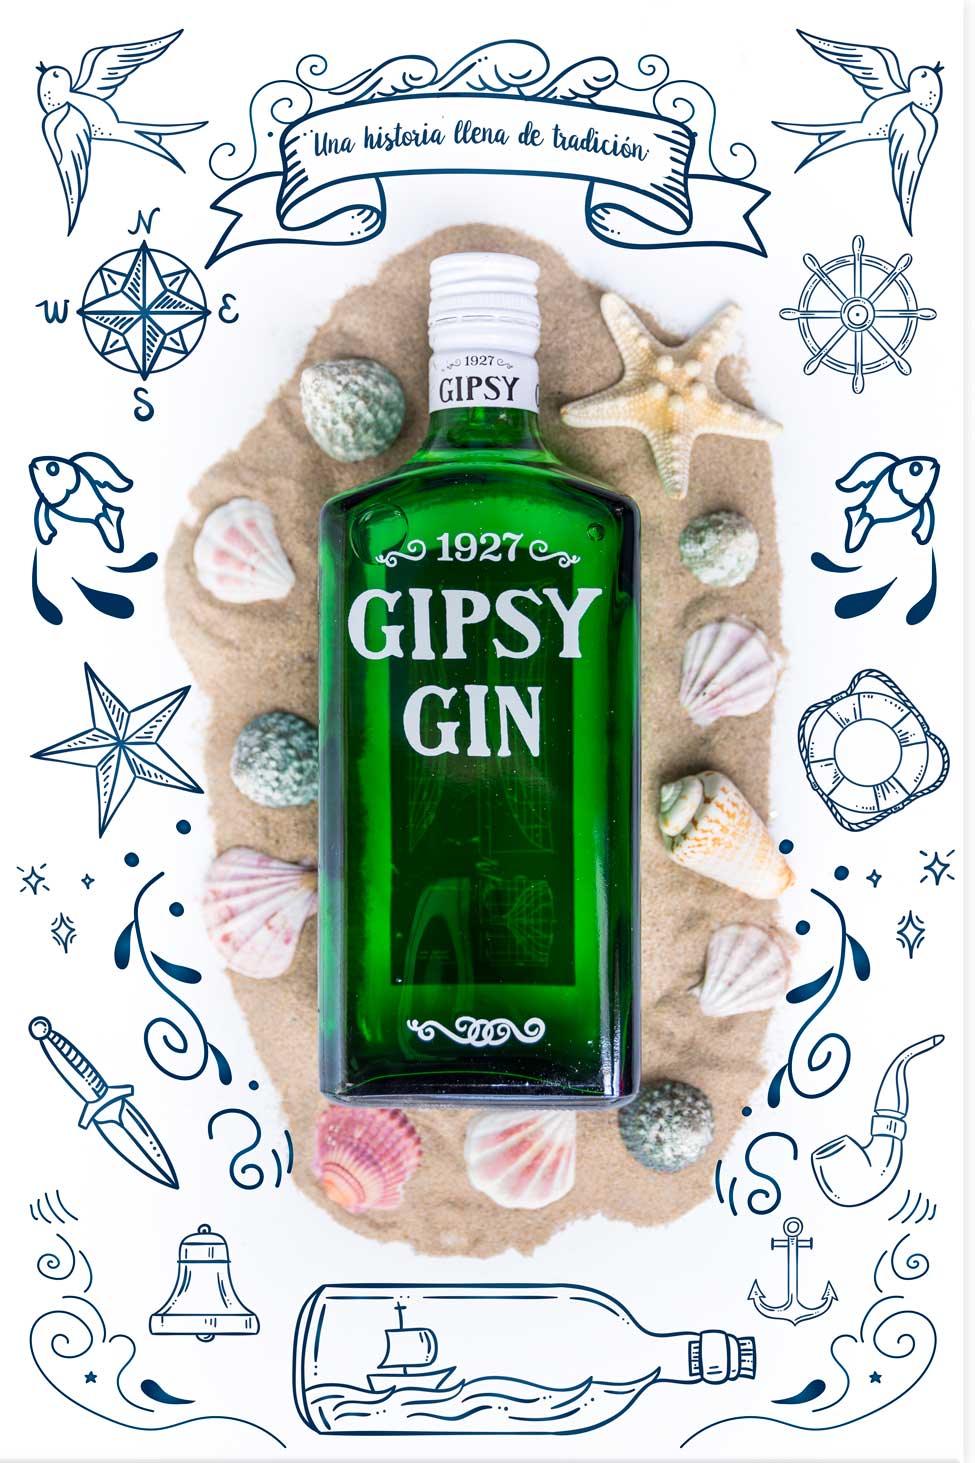 foto botella Gipsy Gin publicidad